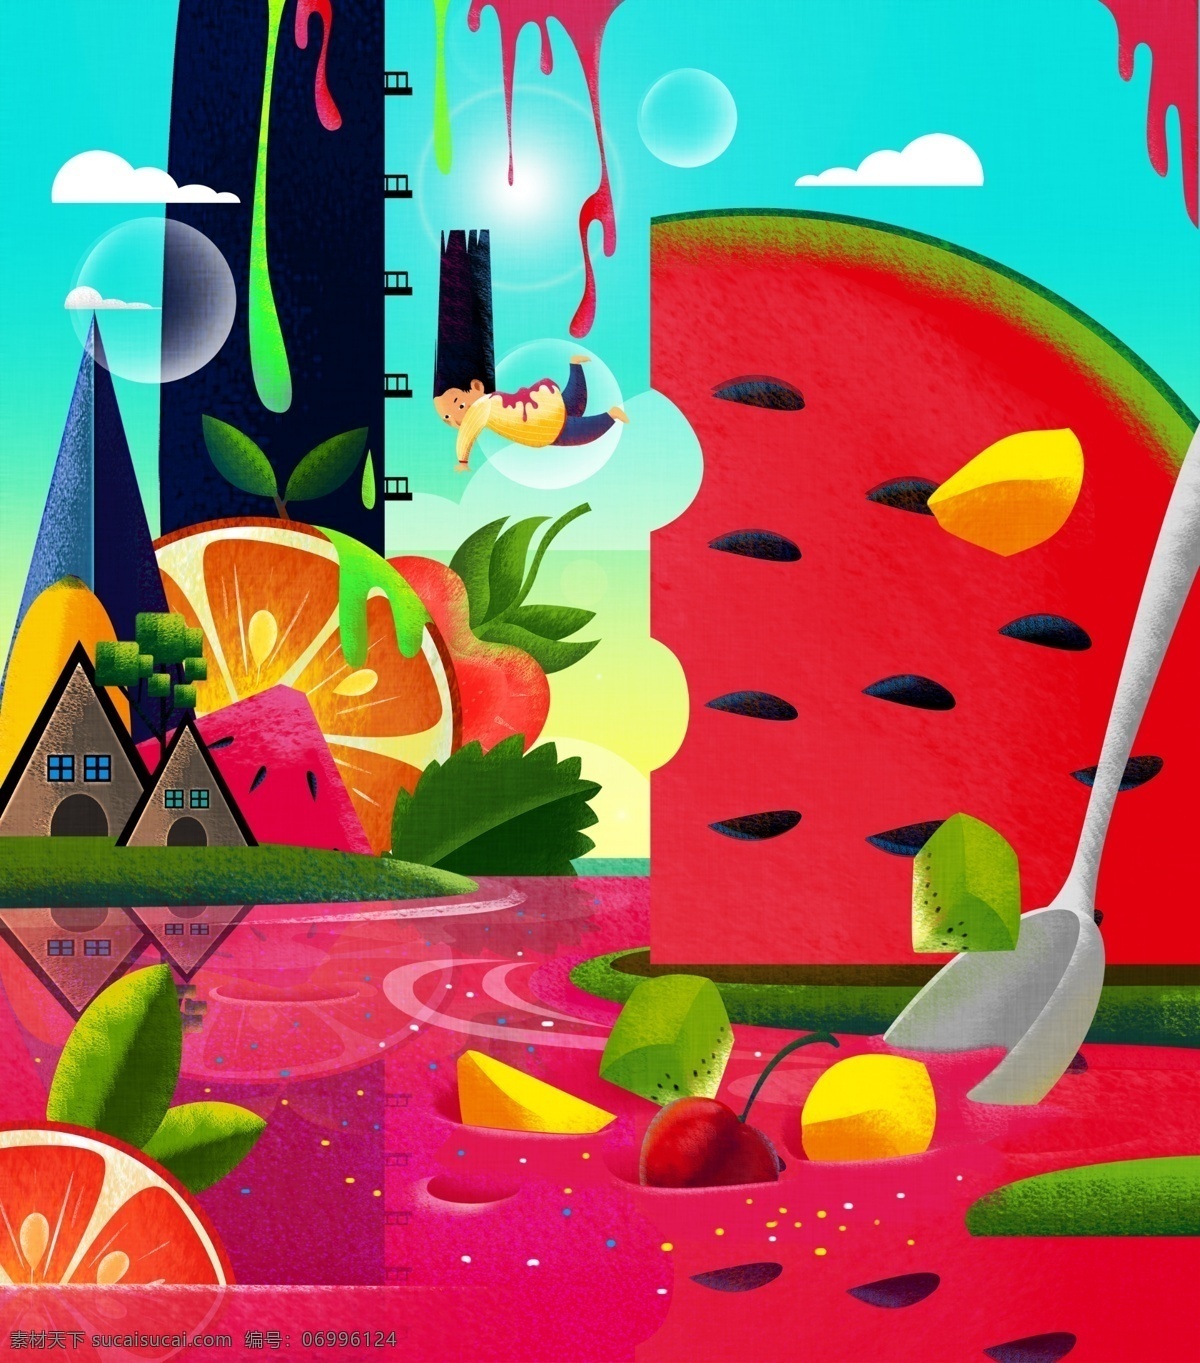 水果 插画 系列 缤纷 飞 一般 感觉 女孩 果汁 刺激 高清图 水果建筑 喜悦感 食欲感 水果缤纷世界 tig格式